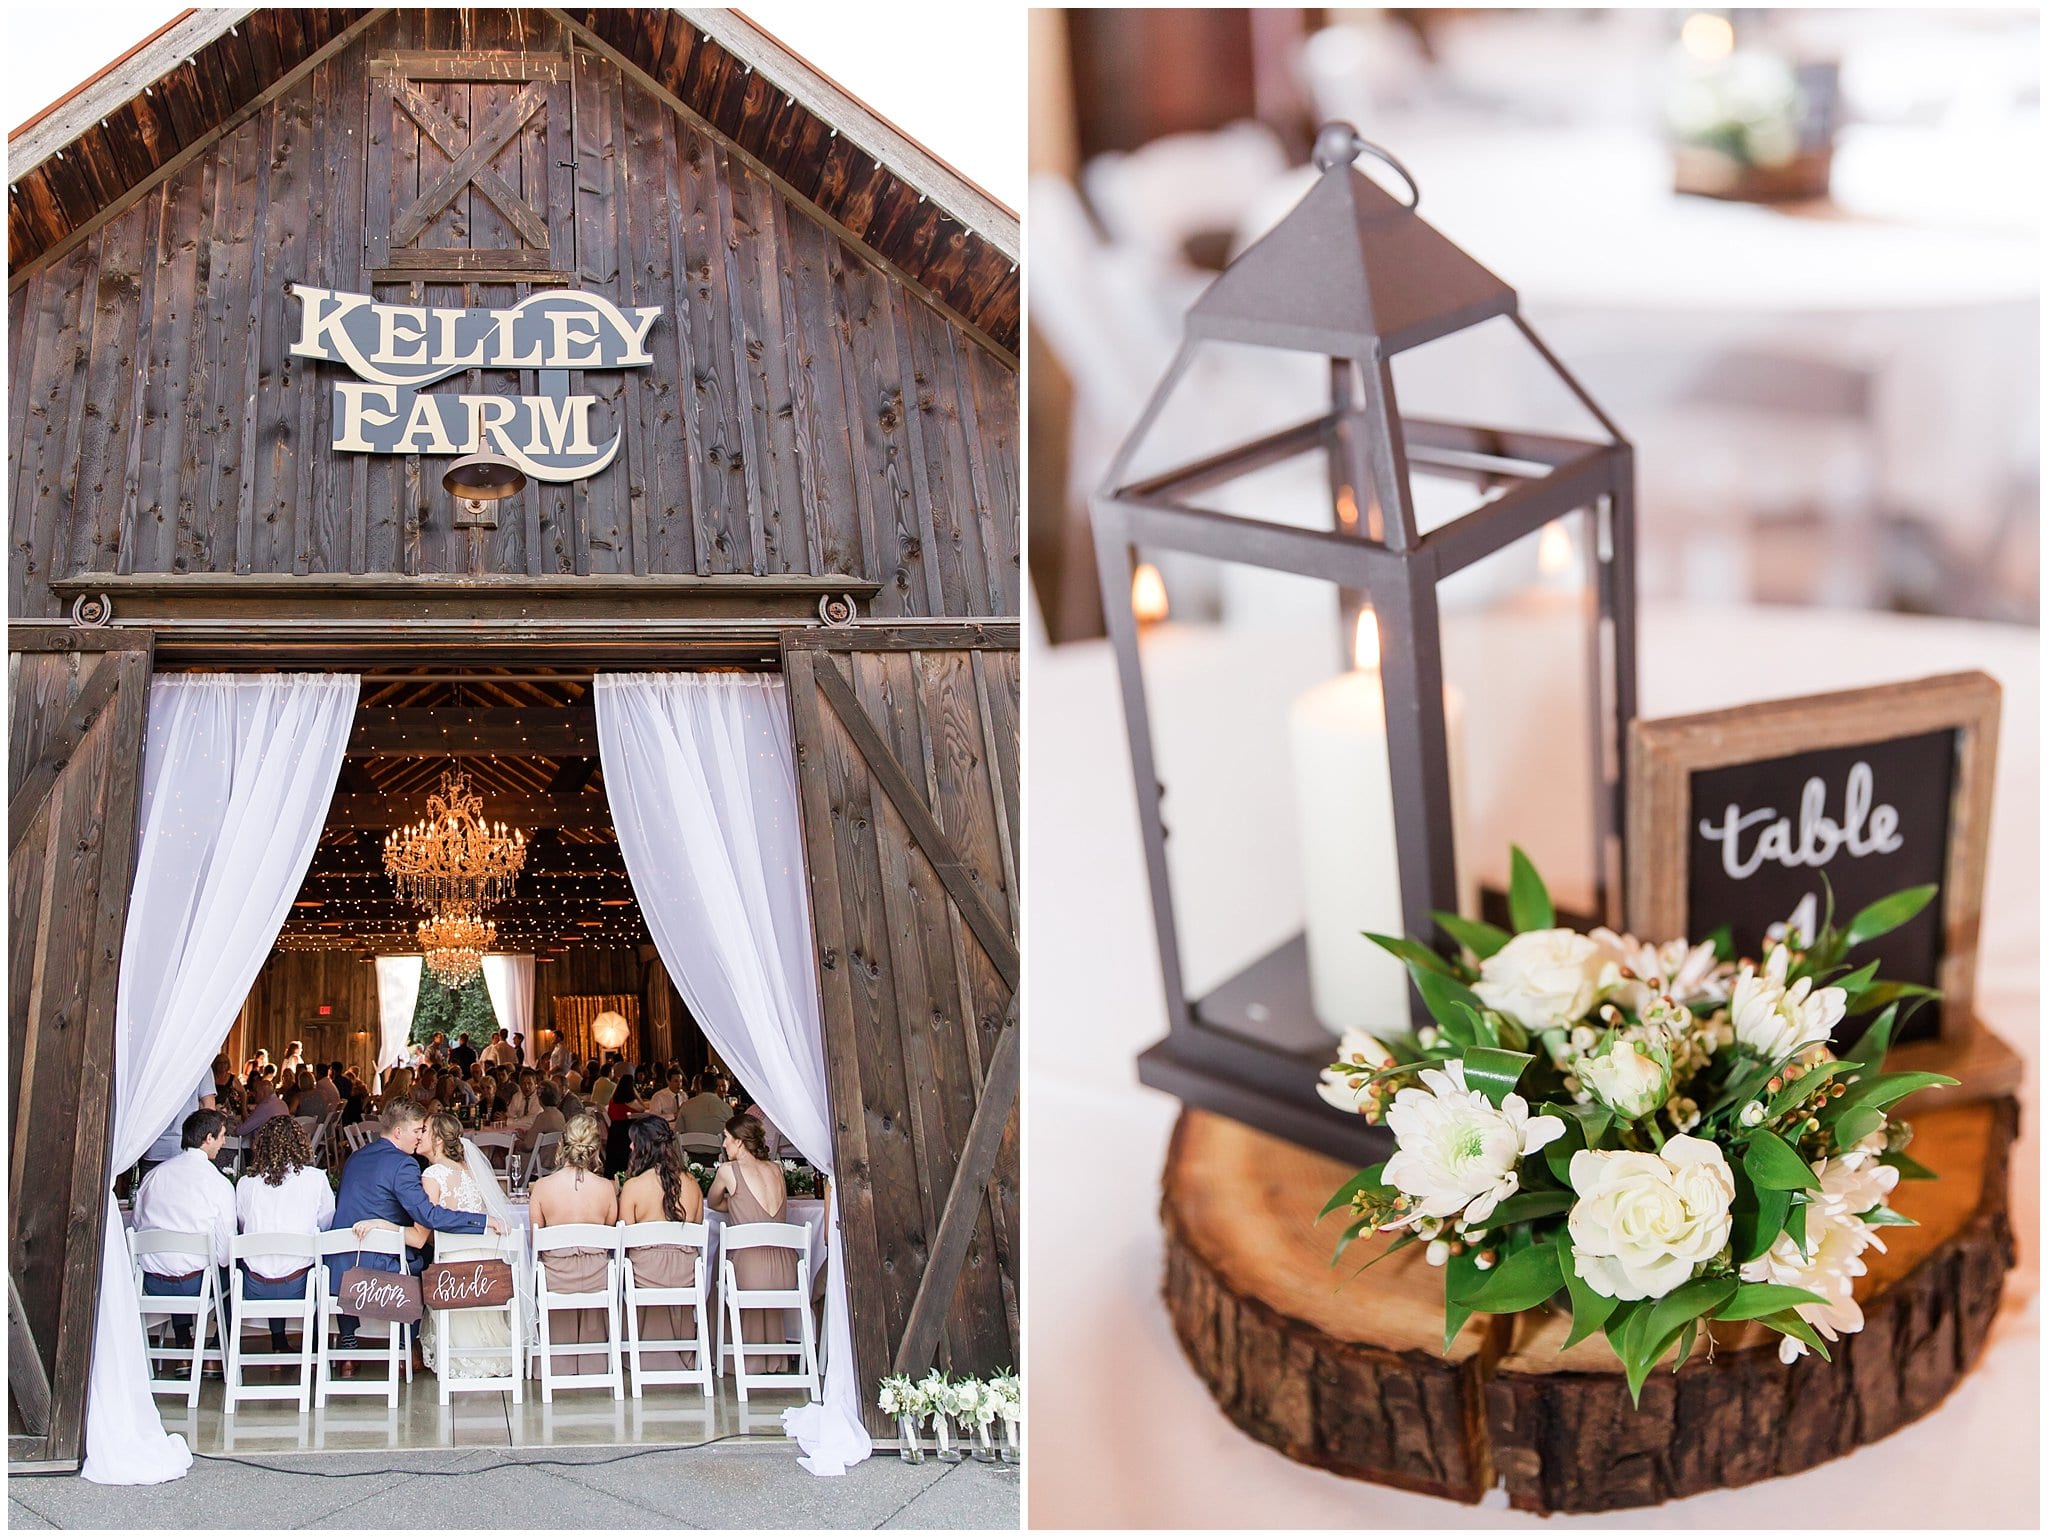 kelley farm, kelley farm wedding, barn wedding